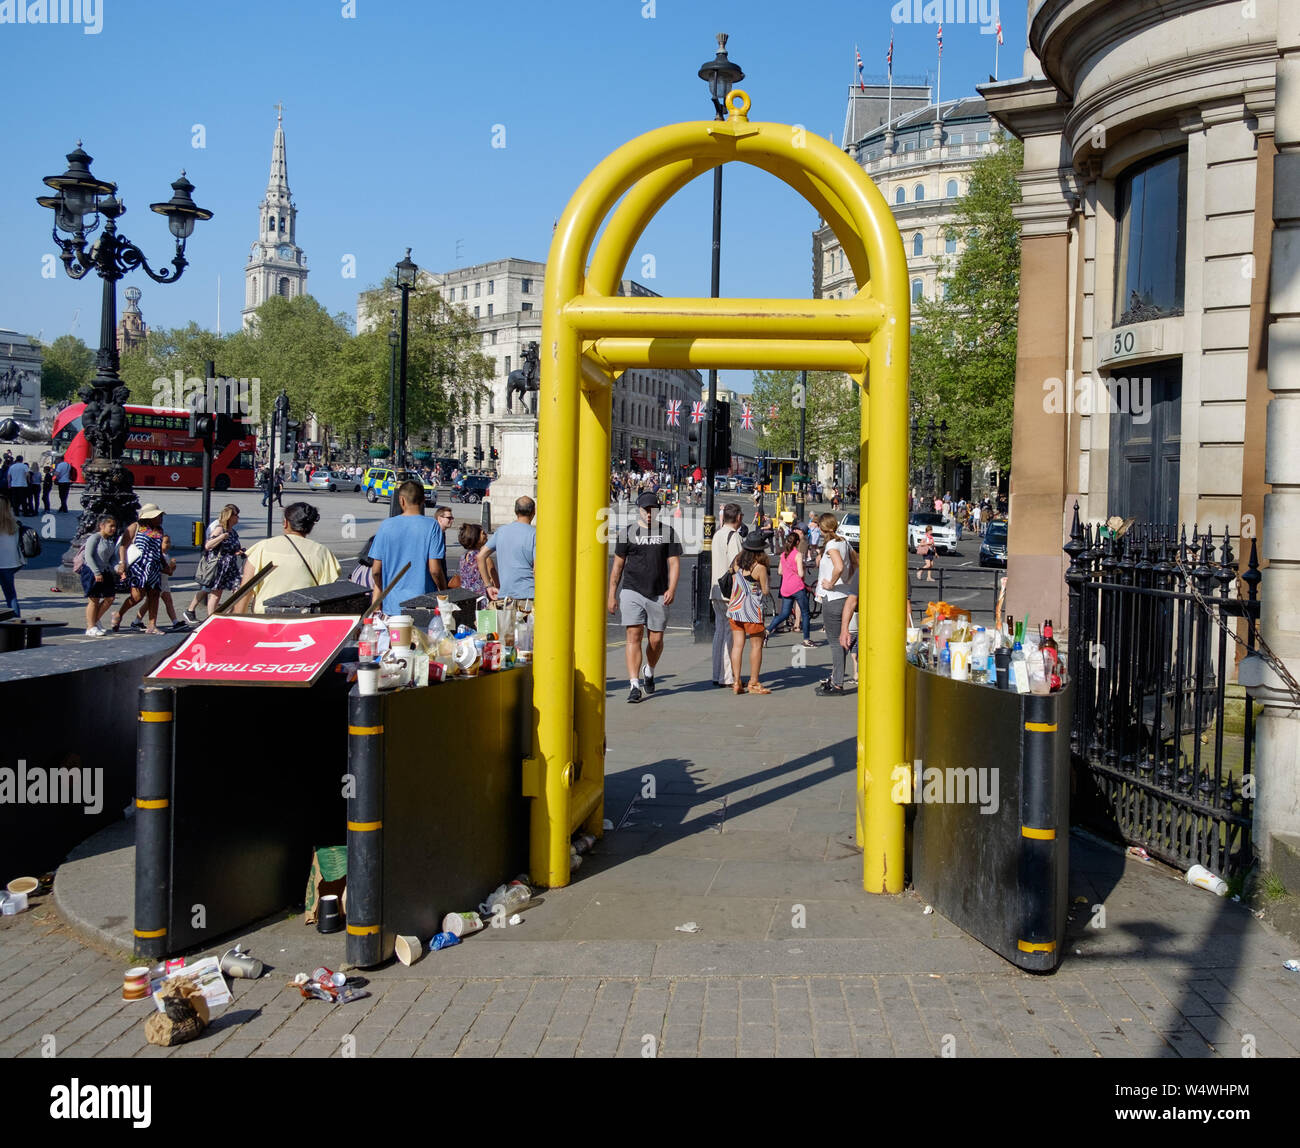 Barrières anti-terreur jaune près de Trafalgar Square, au centre de Londres, Angleterre. avec des tasses, bouteilles vides et les poubelles de chaque côté et le sol. Banque D'Images